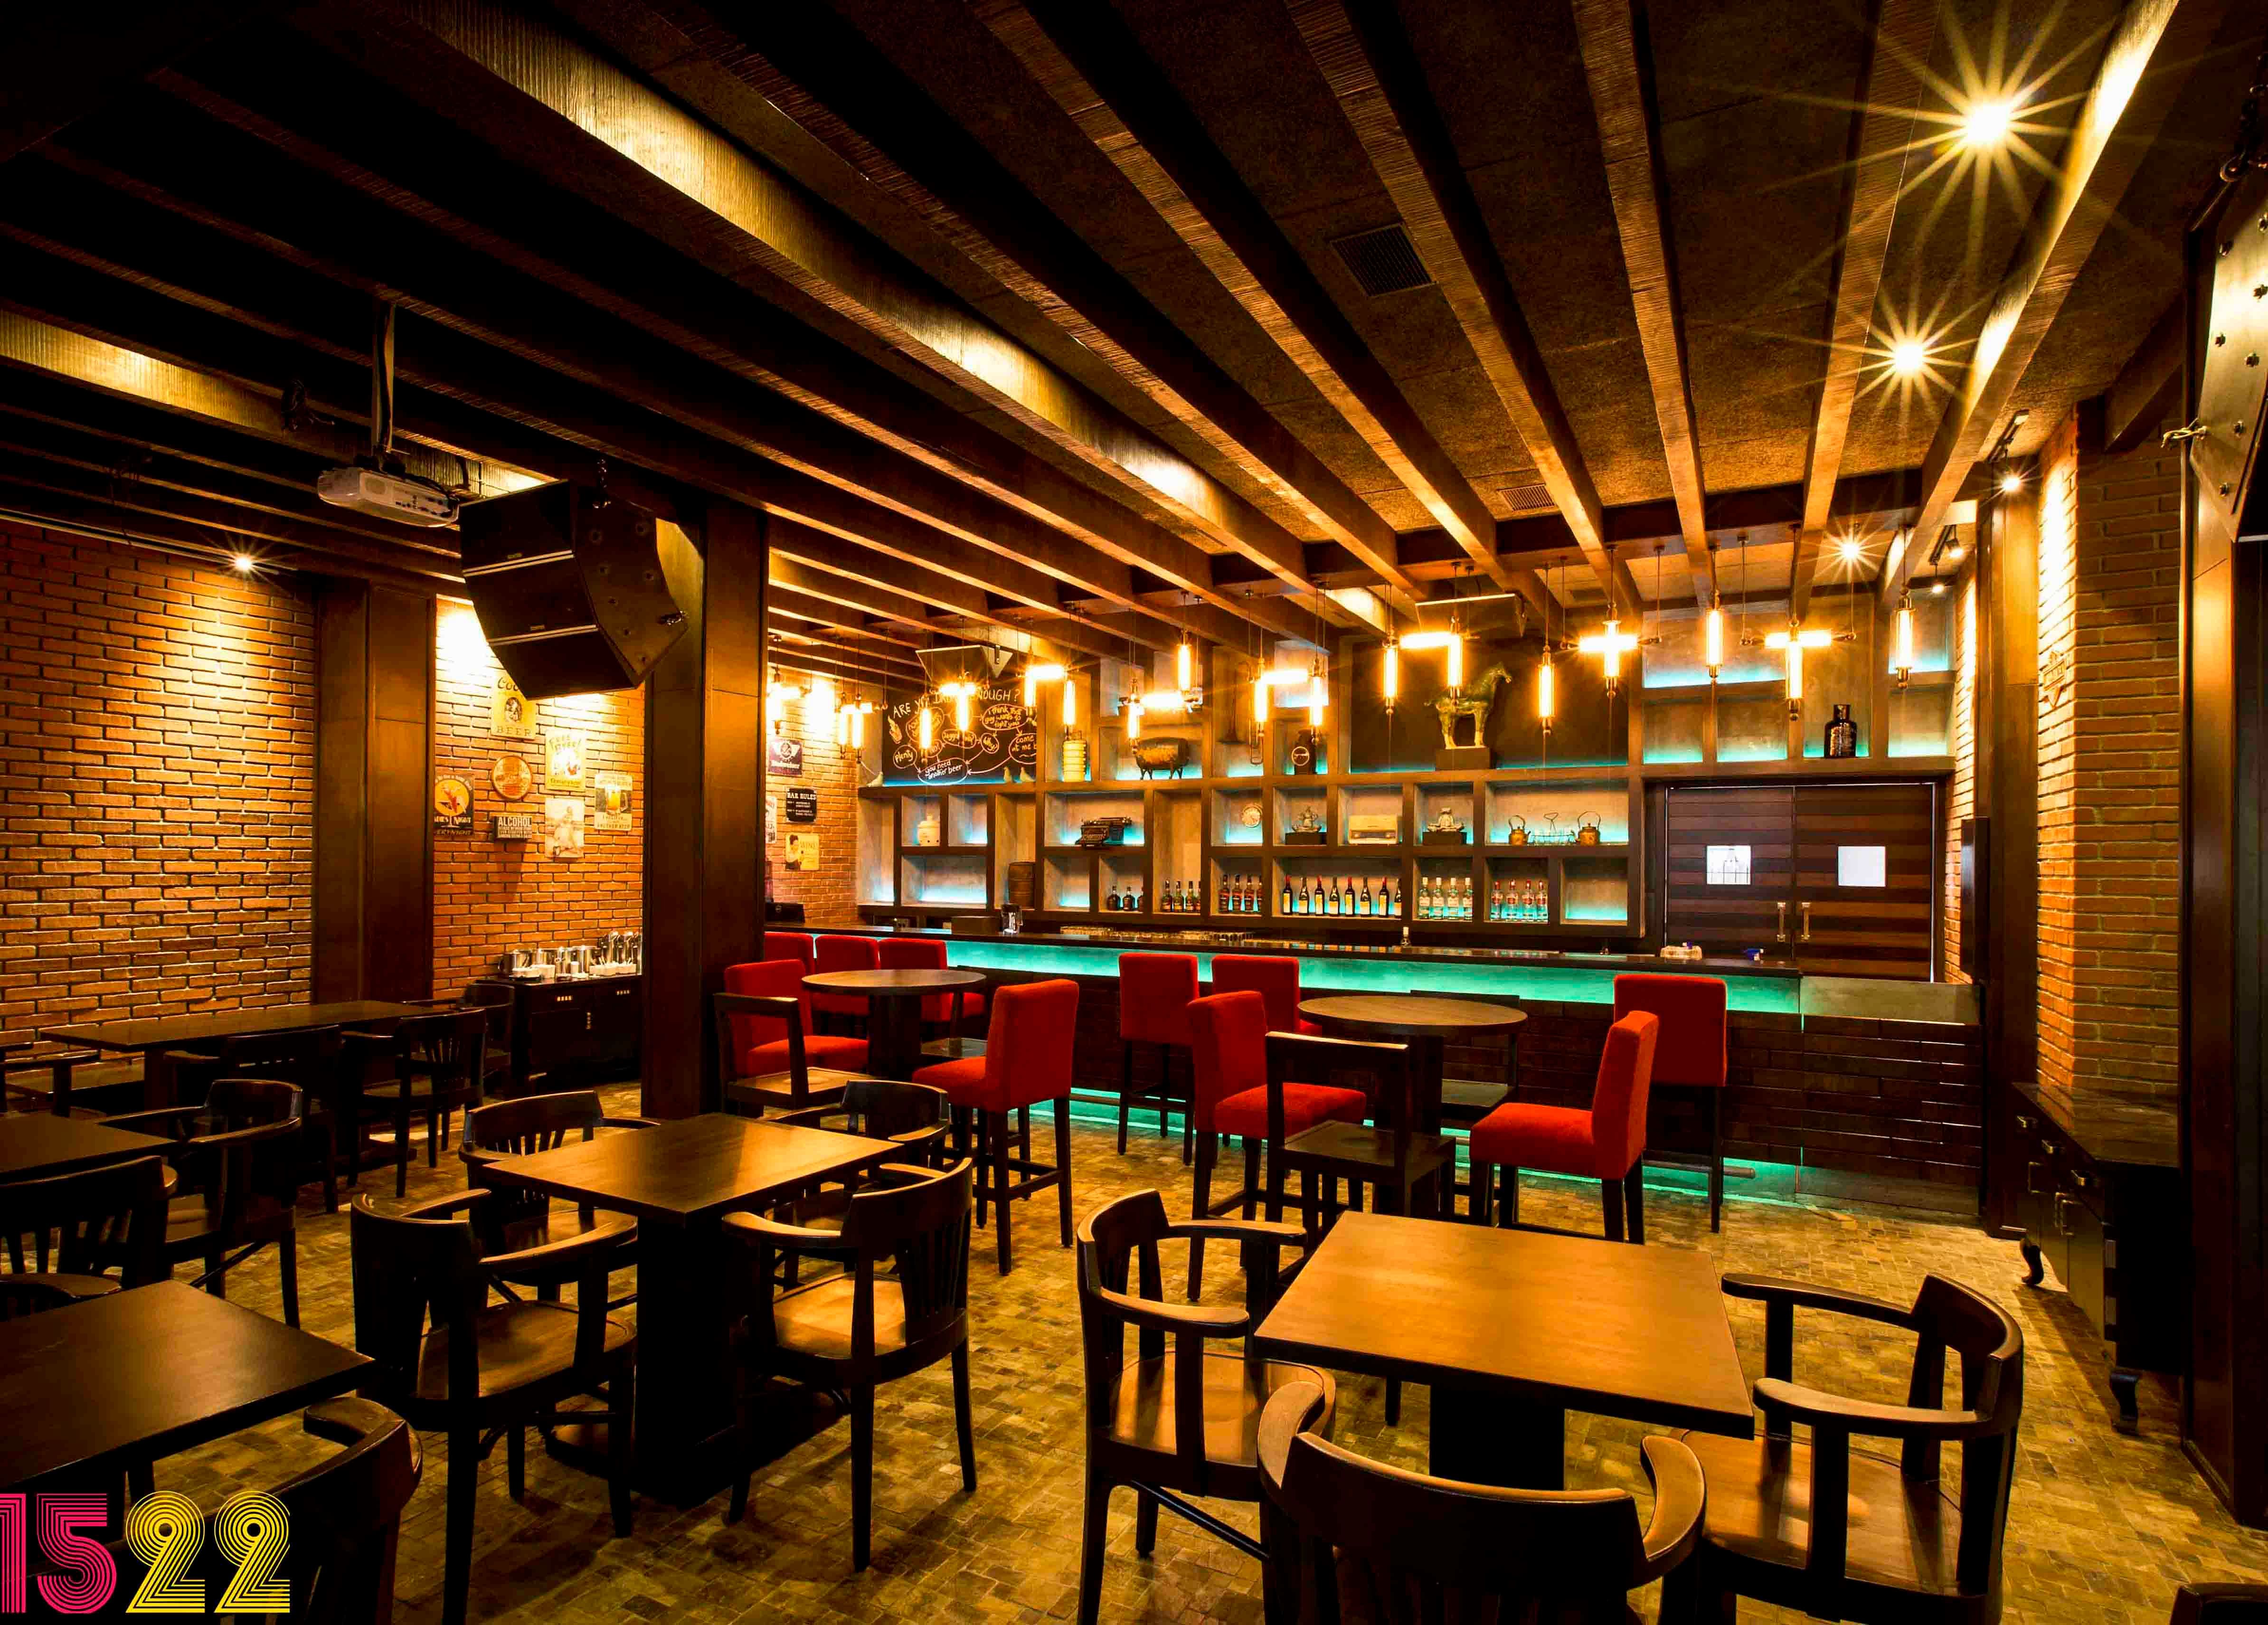 1522 The Pub in Koramangala, Bangalore